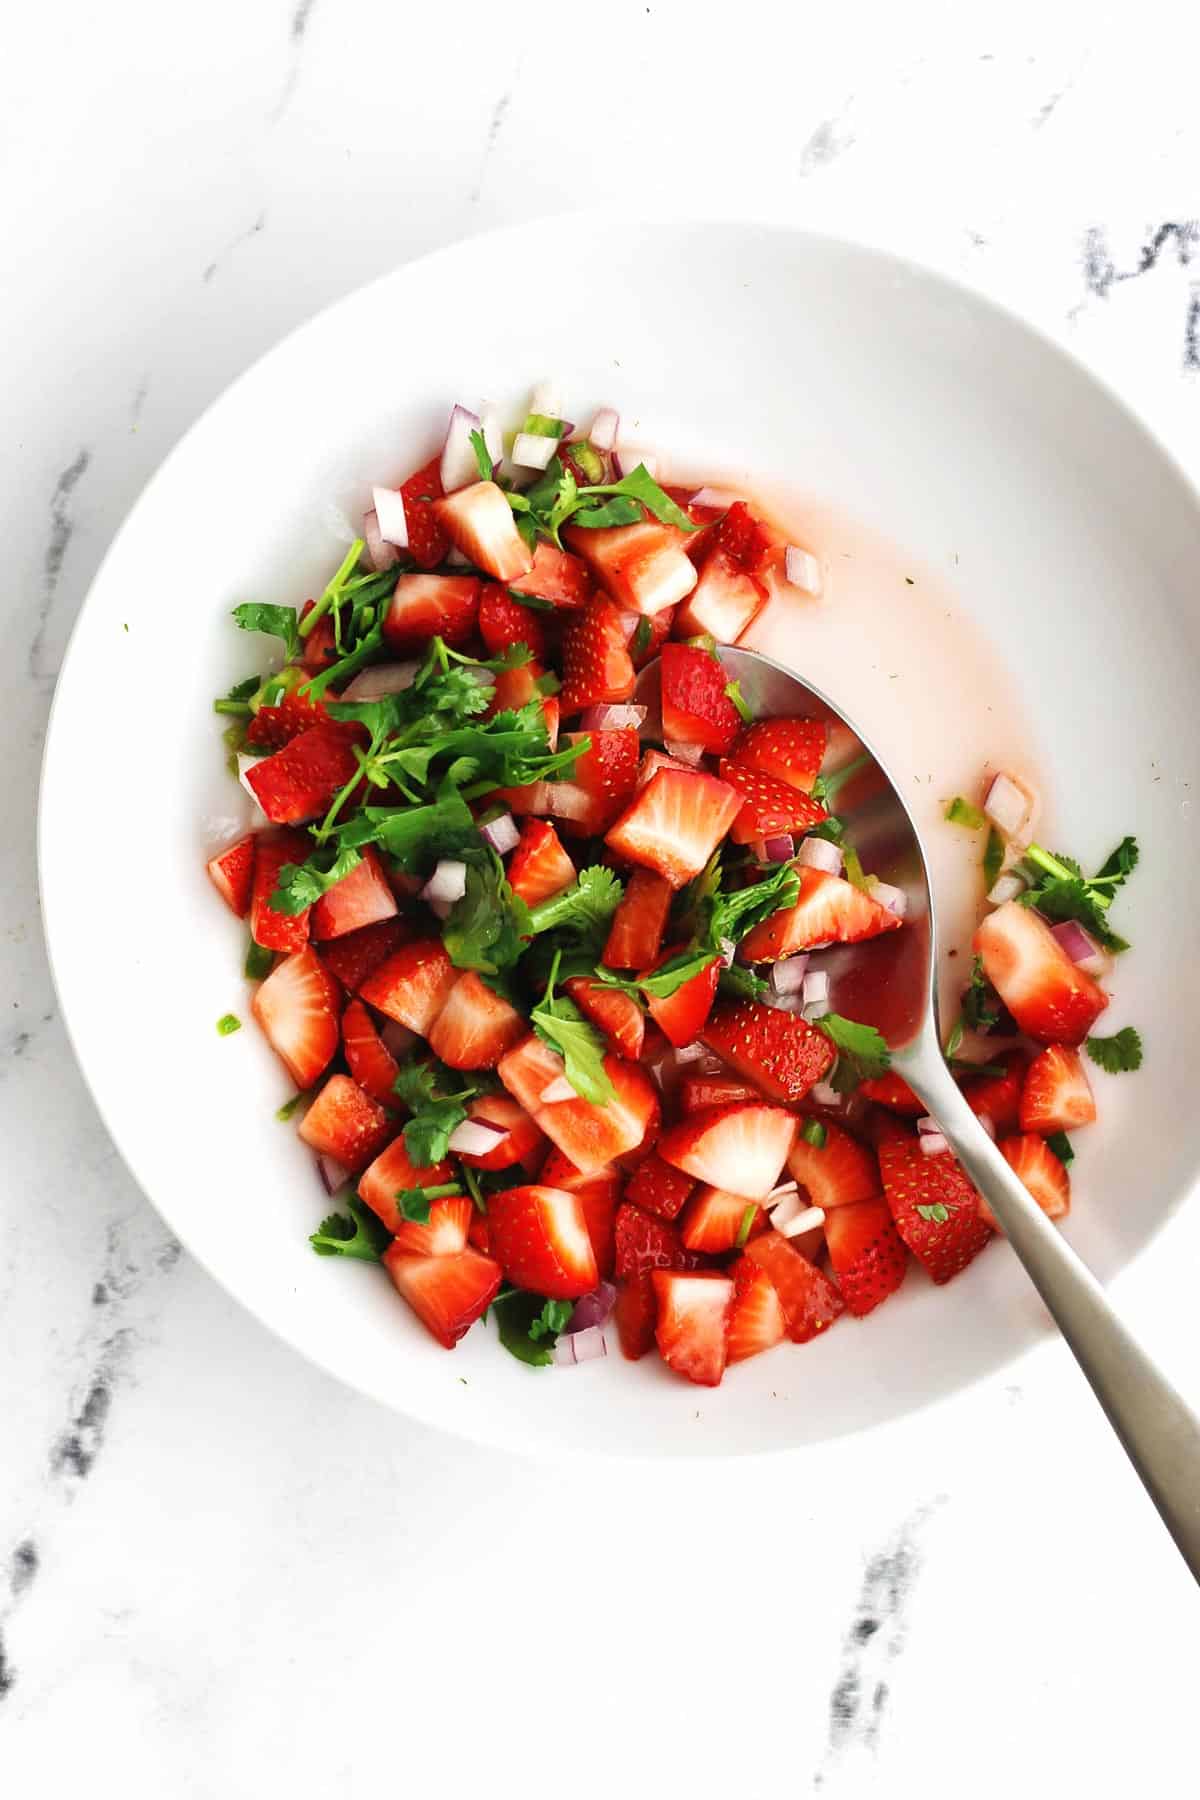 Strawberry pico de gallo in a white bowl with a silver spoon